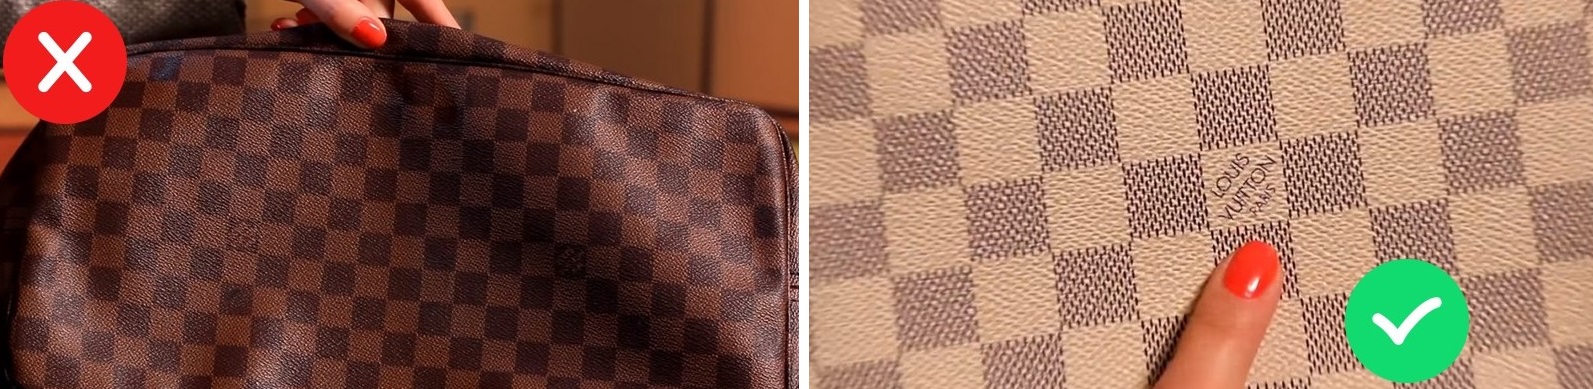 Logo sulla borsa originale Louis Vuitton e sul falso